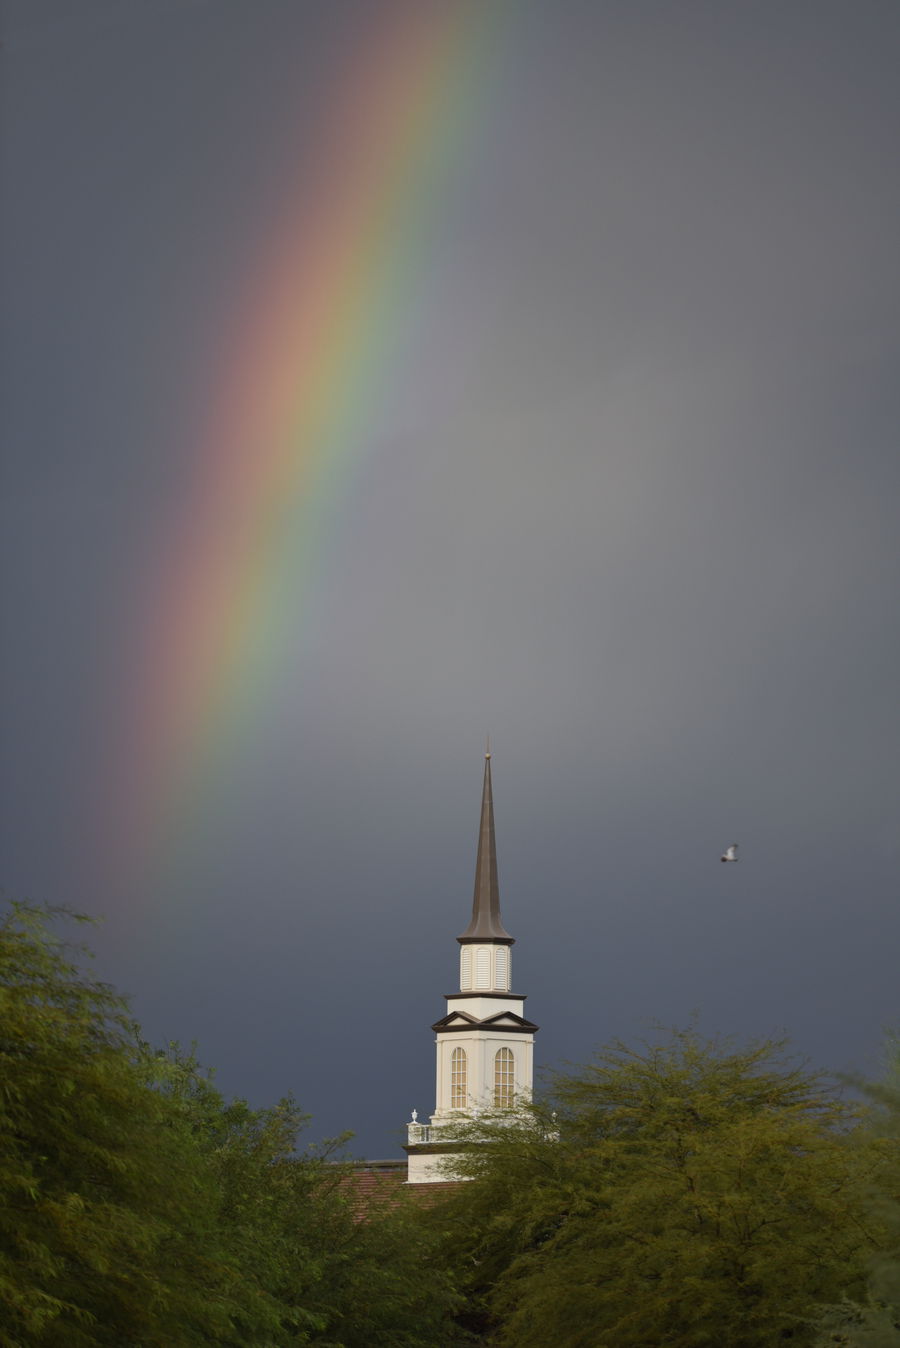 Rainbow over the church temple